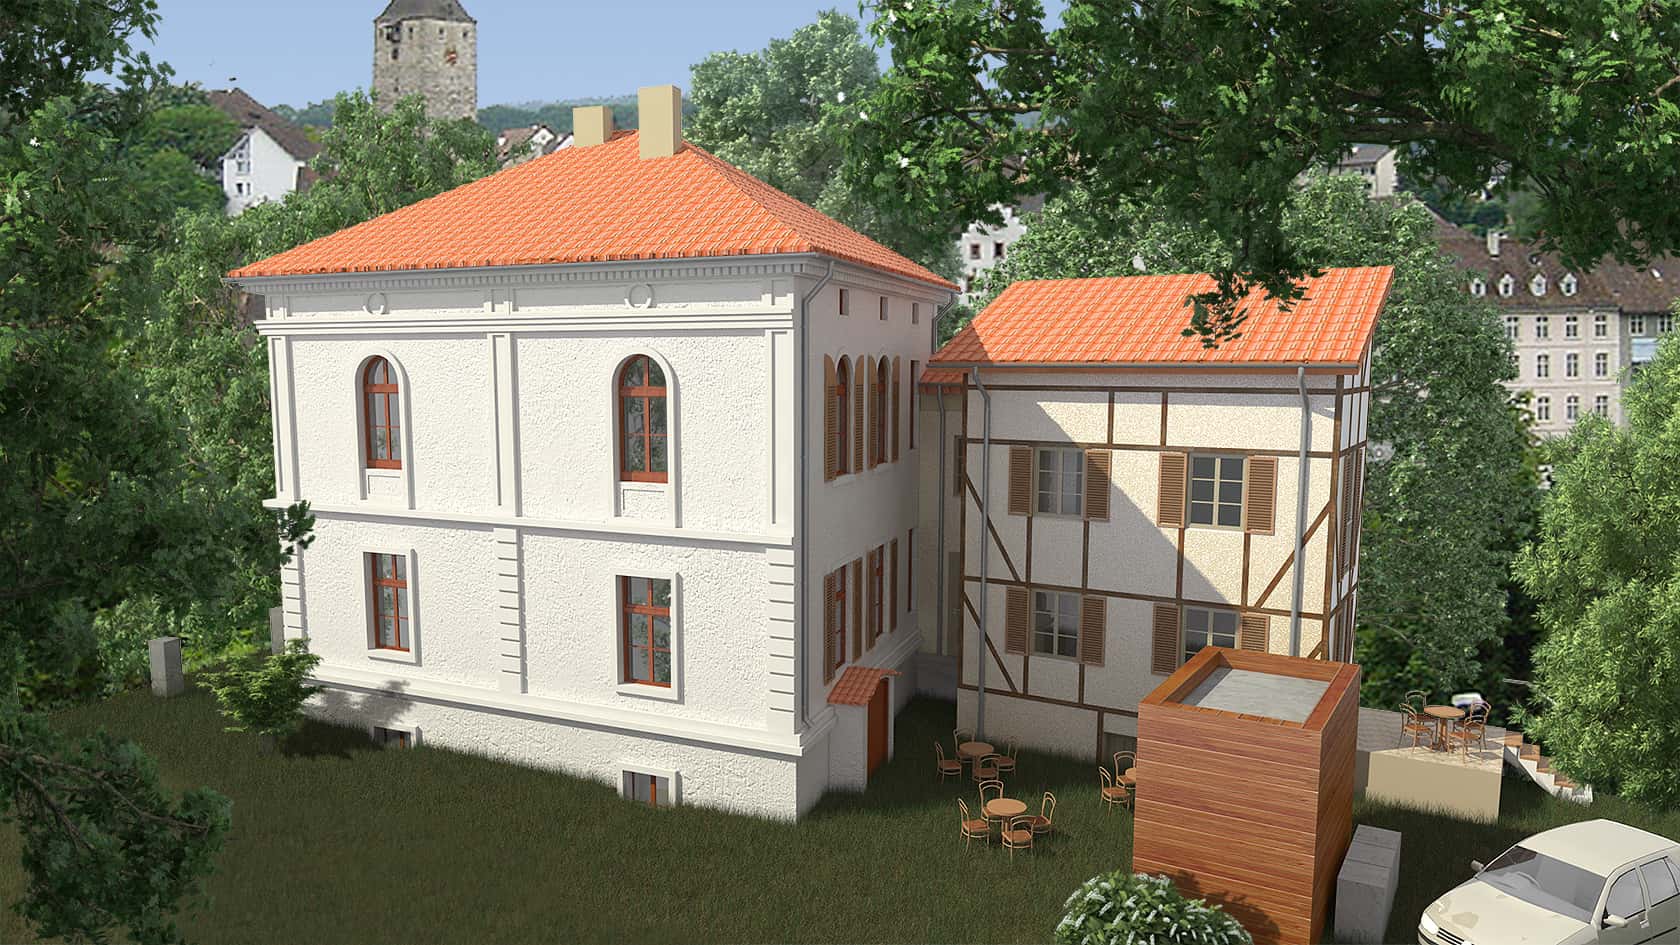 Visualisierung der Stadtvilla als Ärztehaus Seitenflügel mit Anliegerwohnungen & neuer Hofsituation